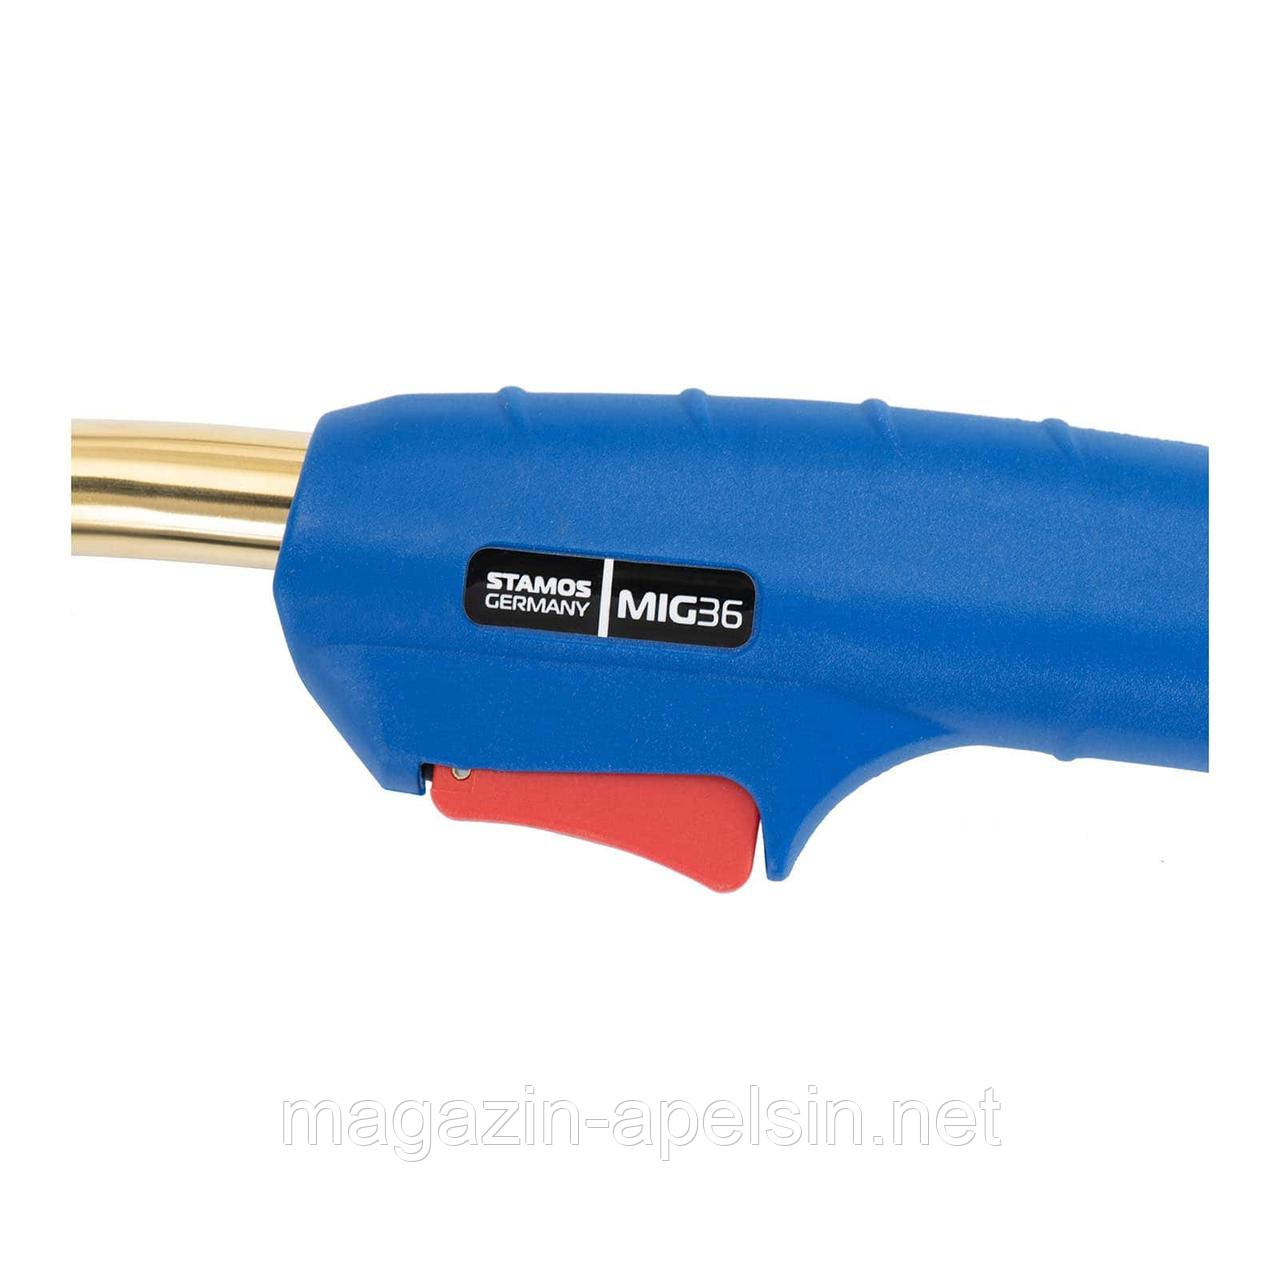 MIG MAG пальник - MIG36 - 3 м x 35 мм² - 340 A CO2 / 300 A MIX - 340 A CO2 / 300 A MIX